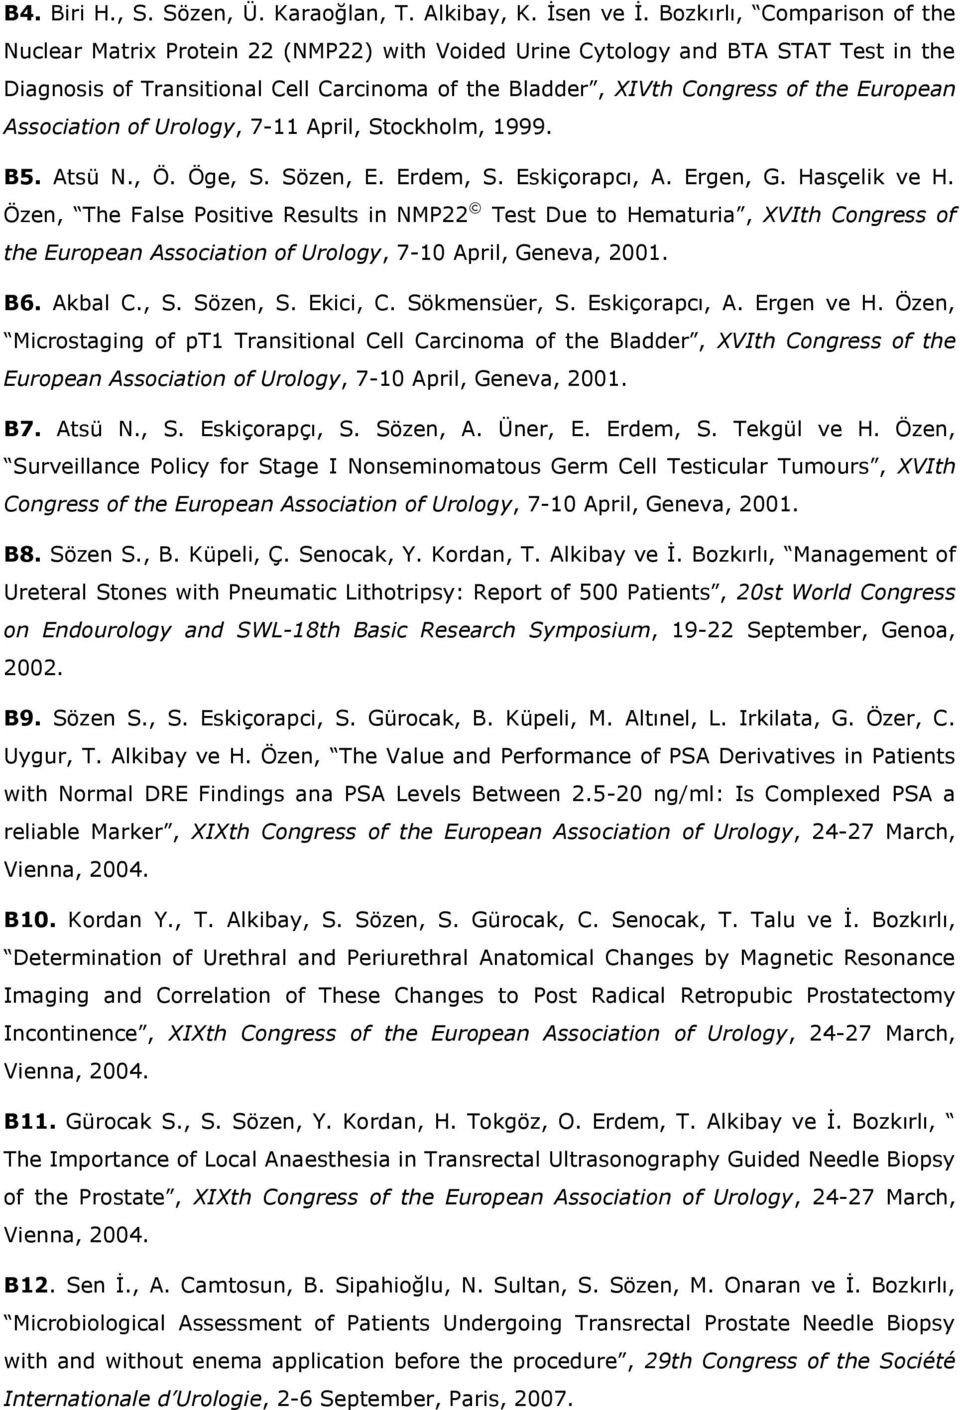 European Association of Urology, 7-11 April, Stockholm, 1999. B5. Atsü N., Ö. Öge, S. Sözen, E. Erdem, S. Eskiçorapcı, A. Ergen, G. Hasçelik ve H.